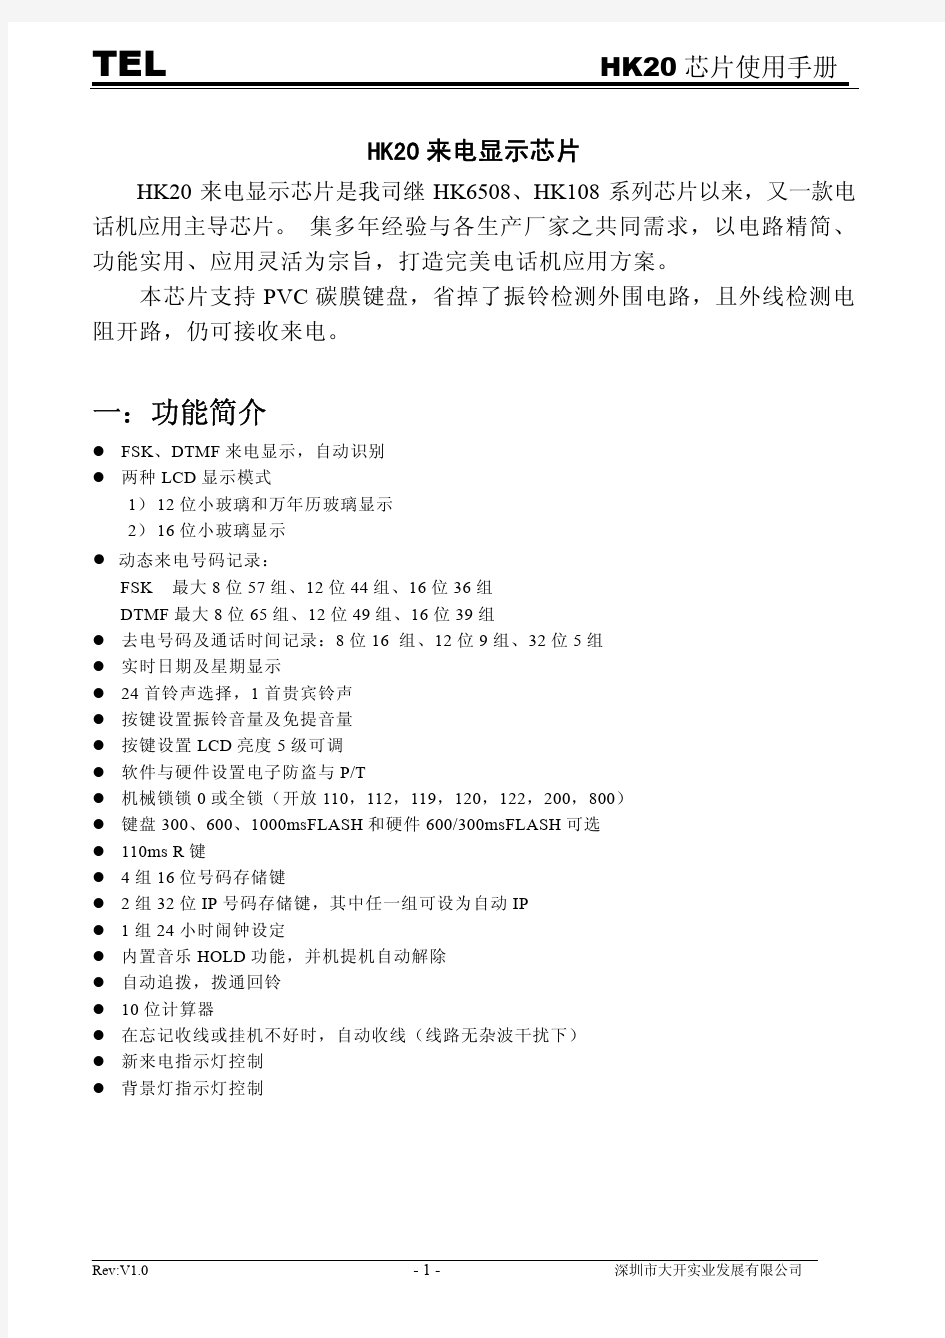 HK20芯片使用手册(20091214)